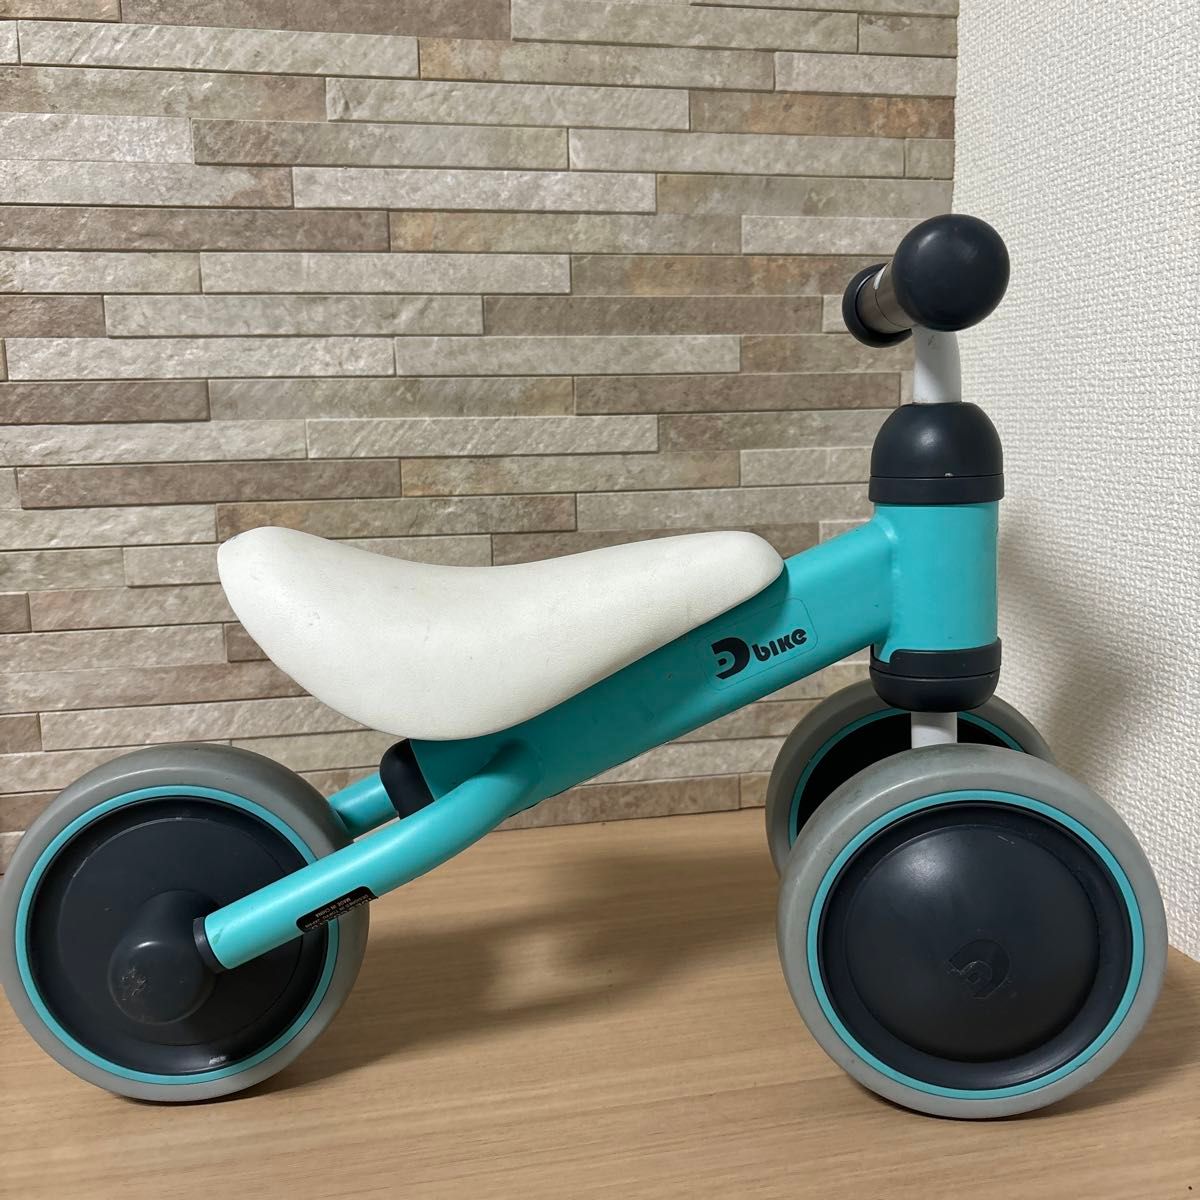 D-bike mini 三輪車 幼児